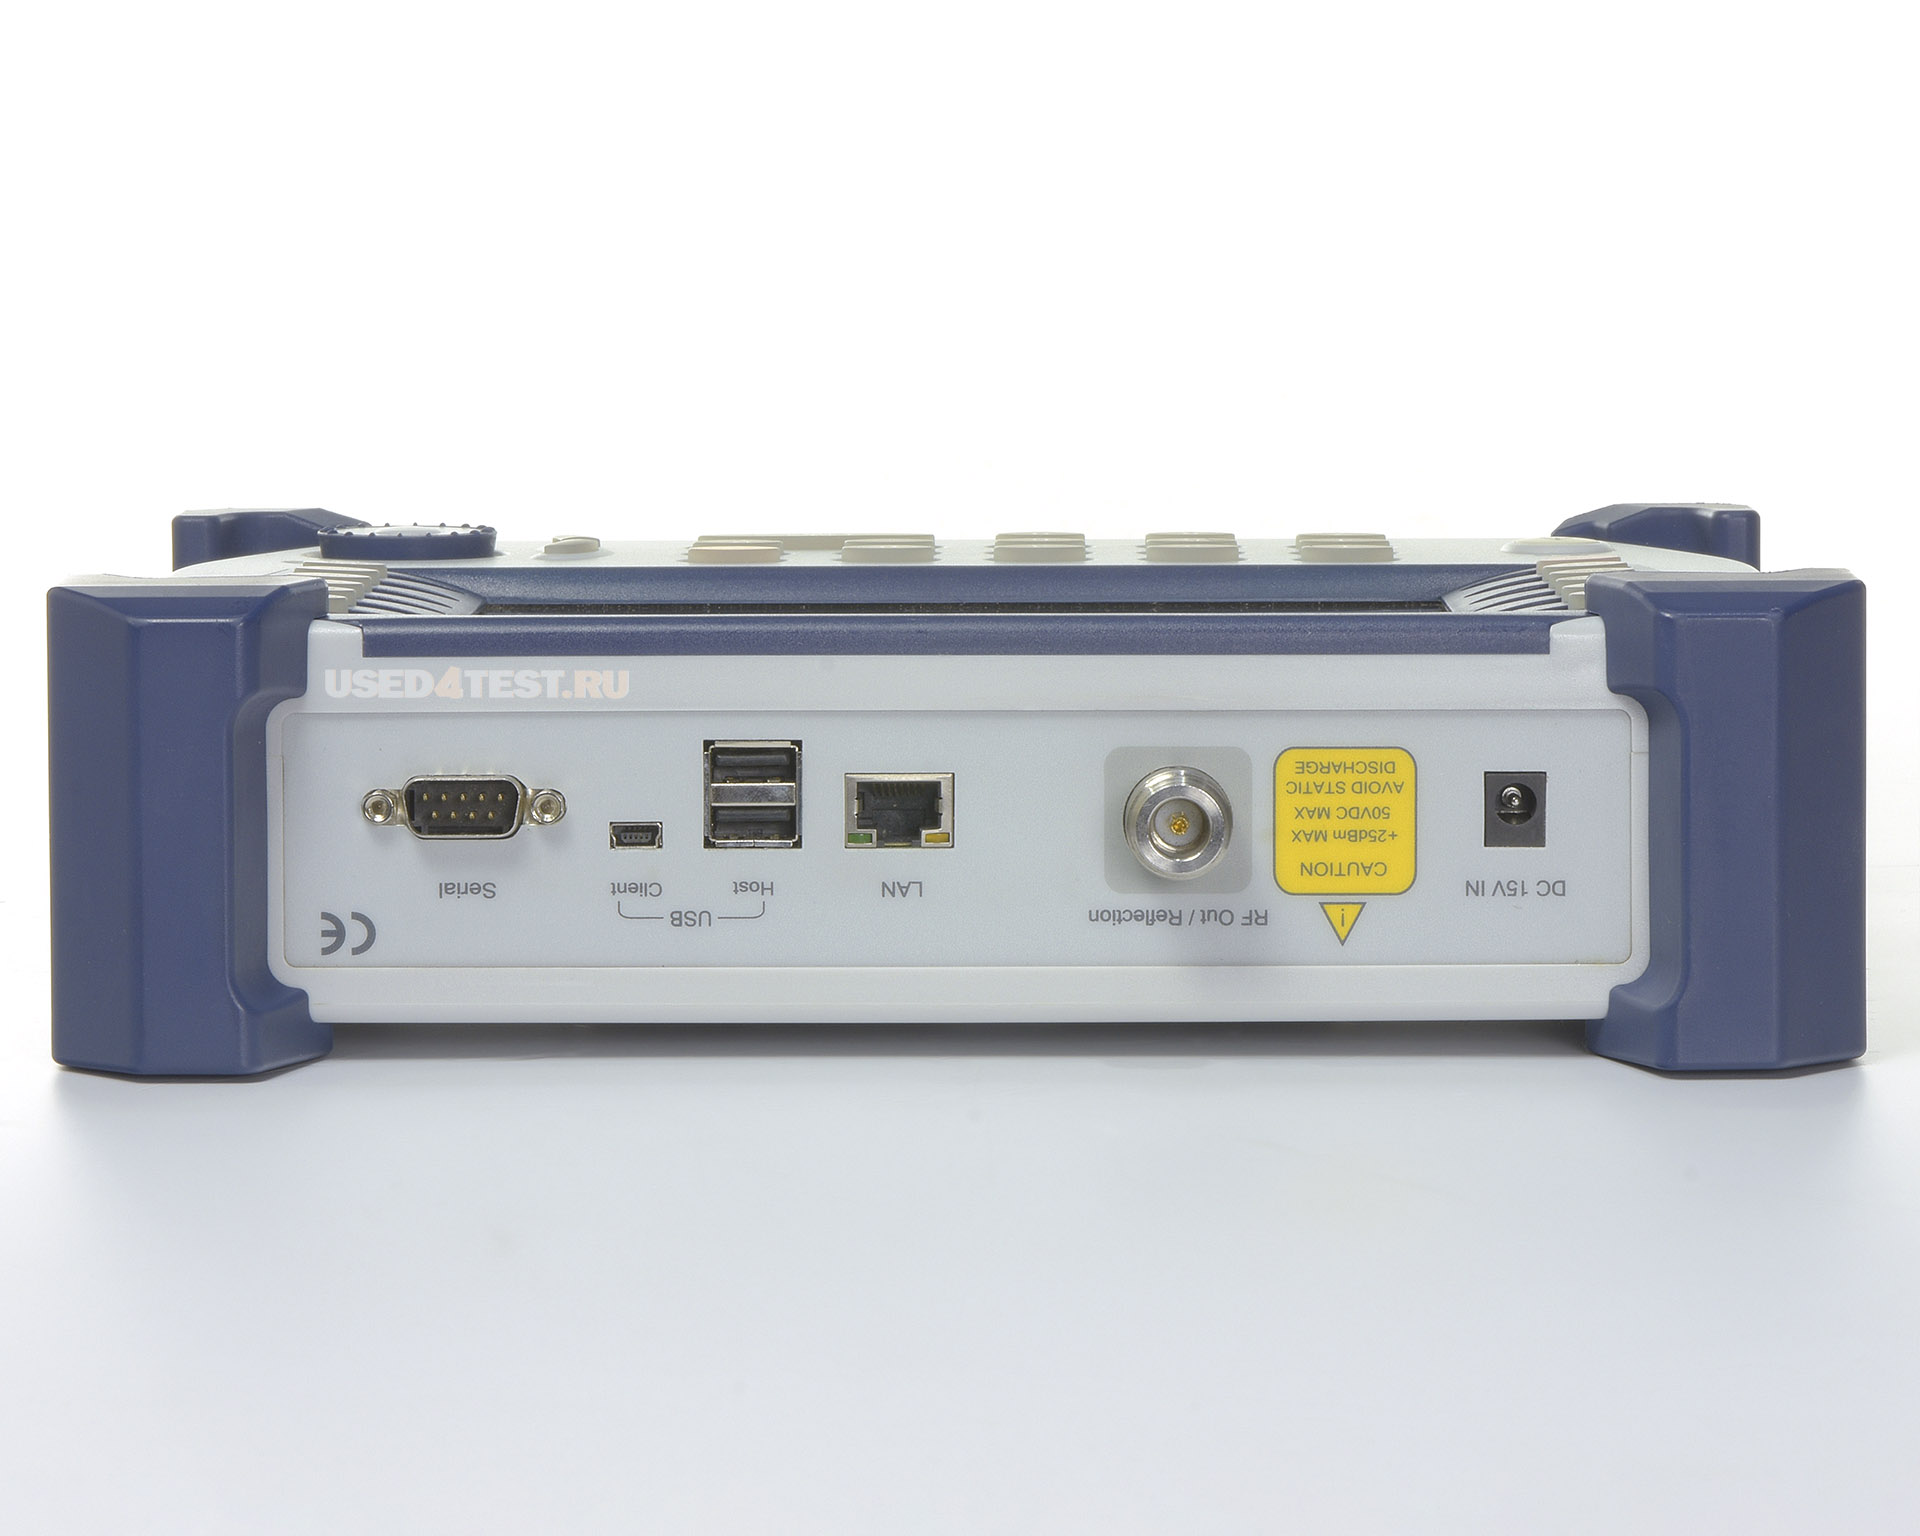 Анализатор антенно-фидерных устройств (АФУ)JDSU JD724C с диапазоном от 5 МГц до 4 ГГц


 В комплекте: 


JDSU JD724C — Анализатор АФУ
	JDSU JD731B — Датчик мощности
	JDSU JD72450509 — Набор для калибровки, 40 дБ, 4 ГГц (OPEN-SHORT-LOAD)
Mini Circuits CBL-1M-NMNM+ — Прецизионный испытательный кабель (разъемы N-Male)
JD72050541 — Мягкая переносная сумка
JD70050542 — Жёсткий переносной кейс
GC72450523 — Адаптер питания 12V DC от автомобильного прикуривателя


 

 Стоимость указана в Рублях DDP Москва по безналичному расчету без НДС
